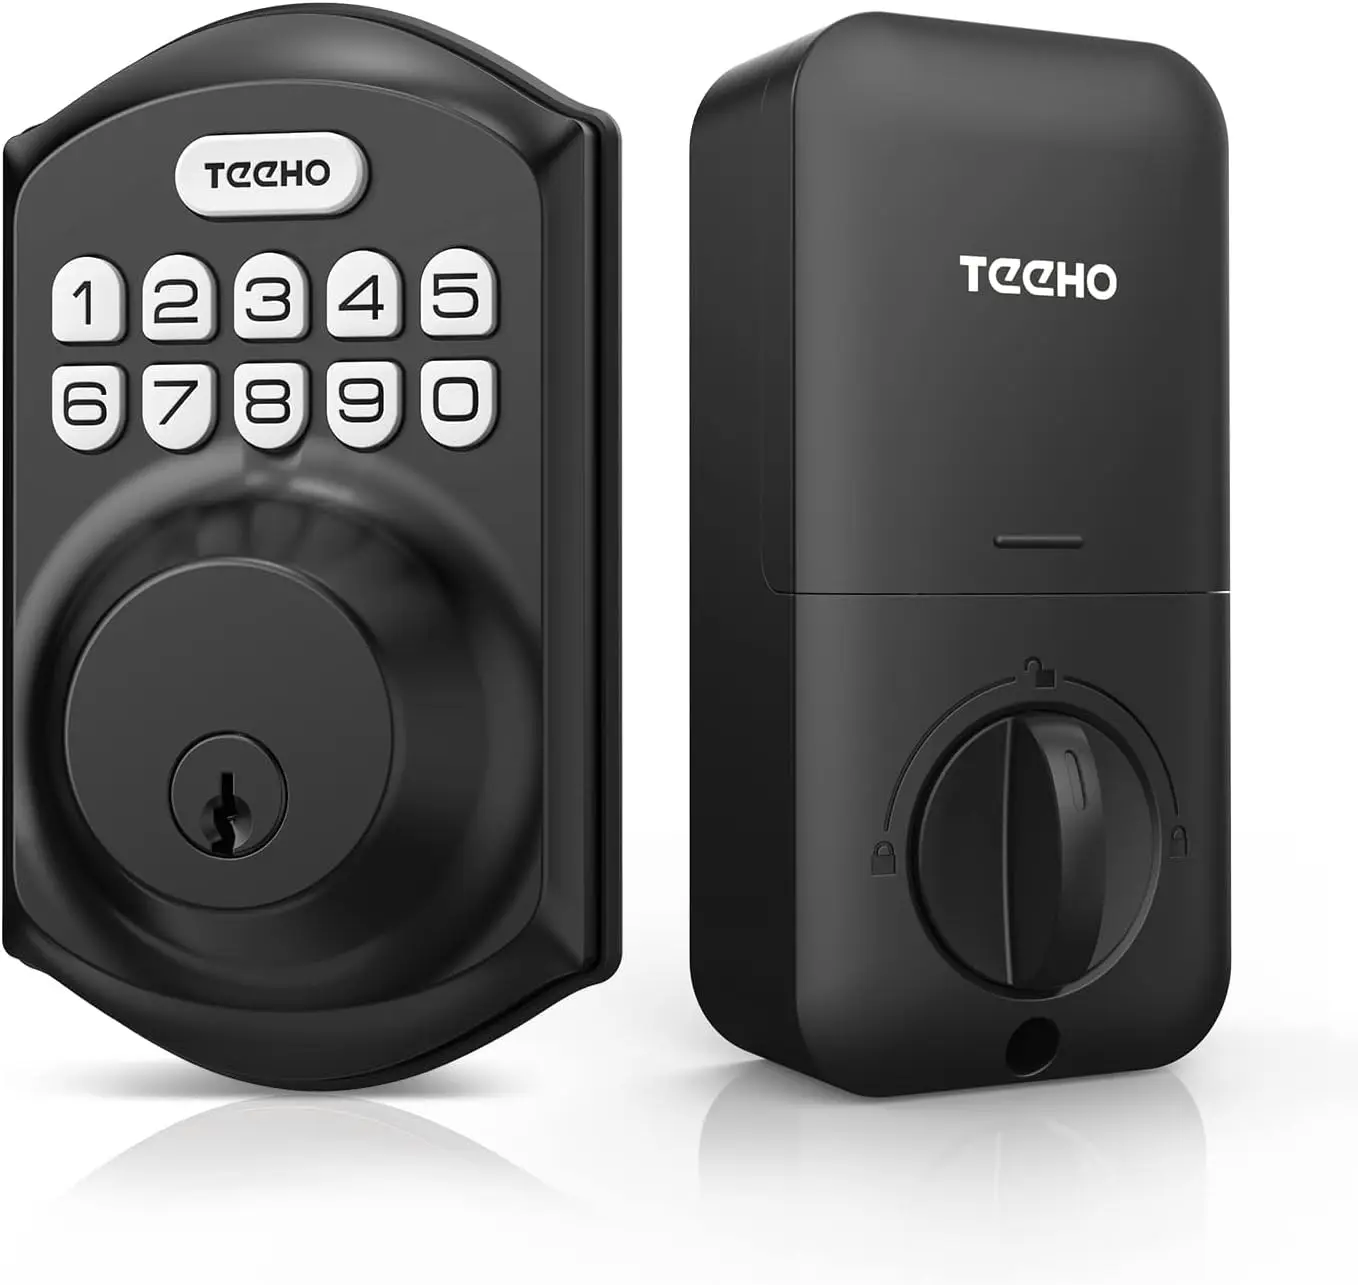 

TE001 Keyless Entry Door Lock with Keypad - Smart Deadbolt Lock for Front Door with 2 Keys - Auto Lock - Easy Installation | USA